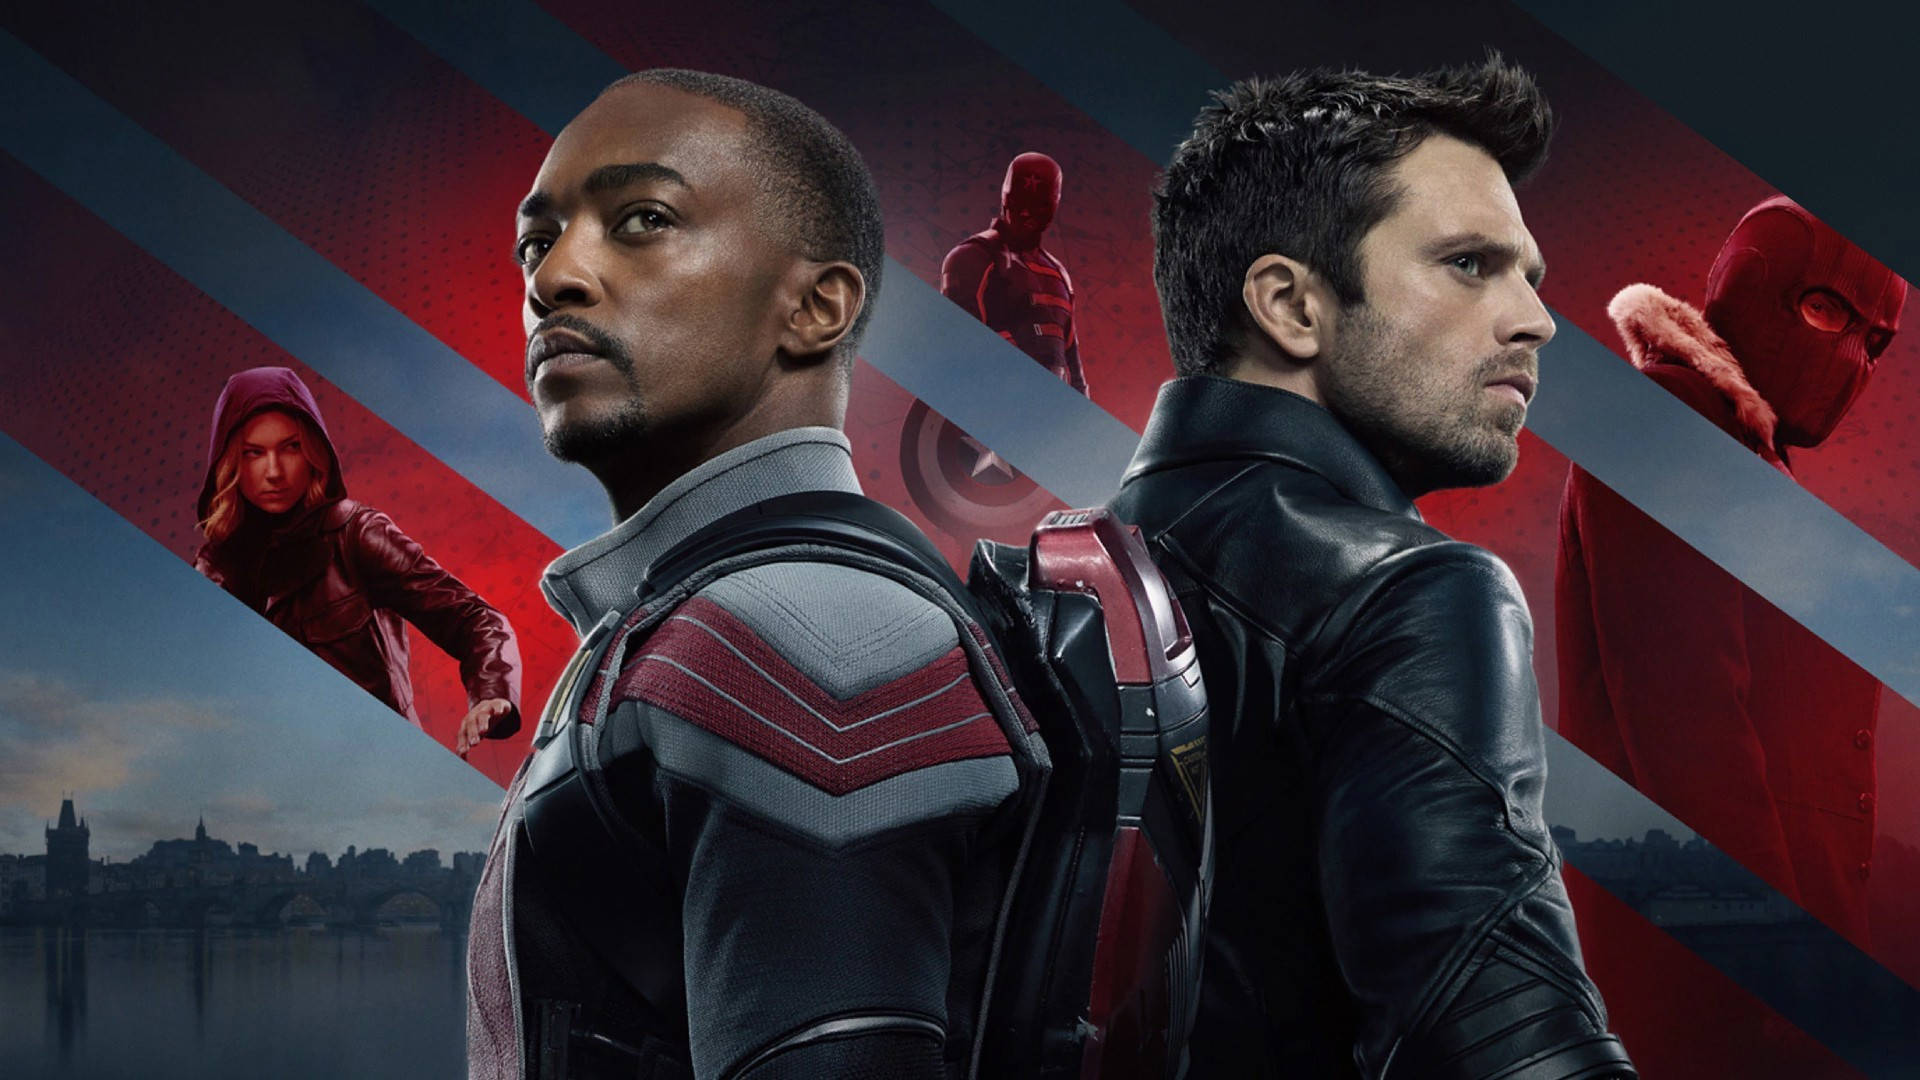 Bucky Barnes From Marvel's Avengers Background